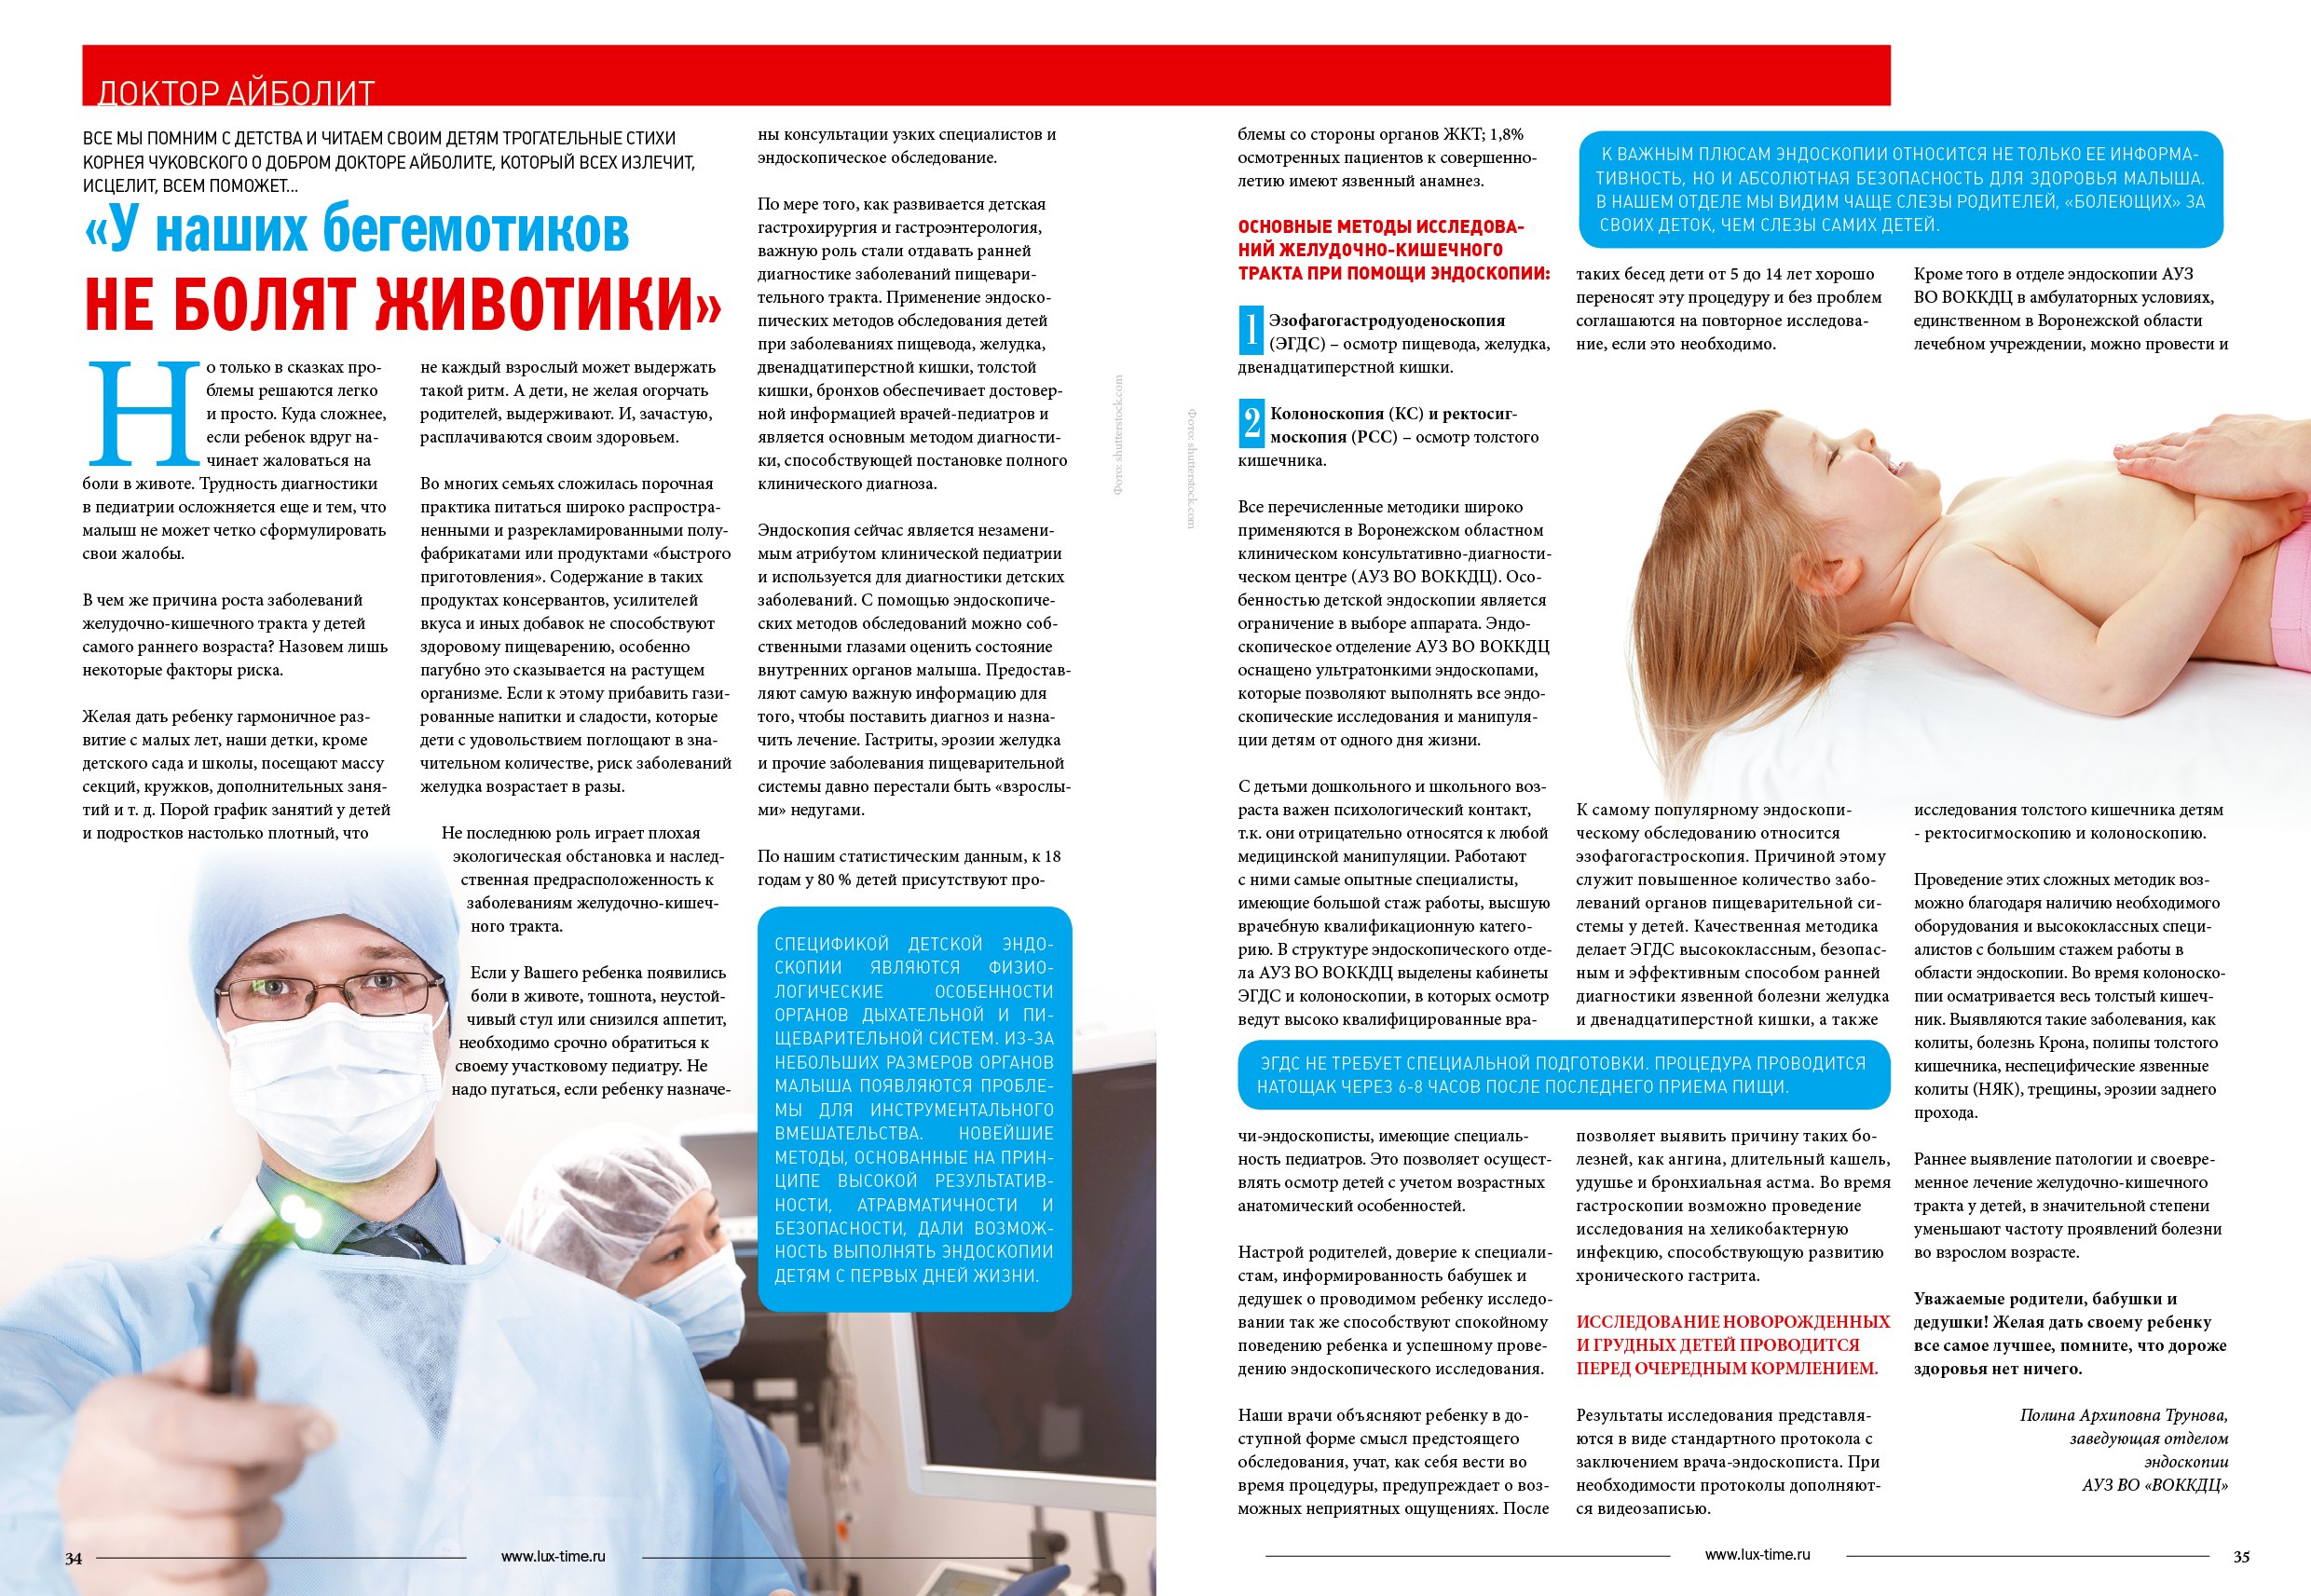 Vodc ru результаты. Эндоскопия реклама. Medicine Life журнал.